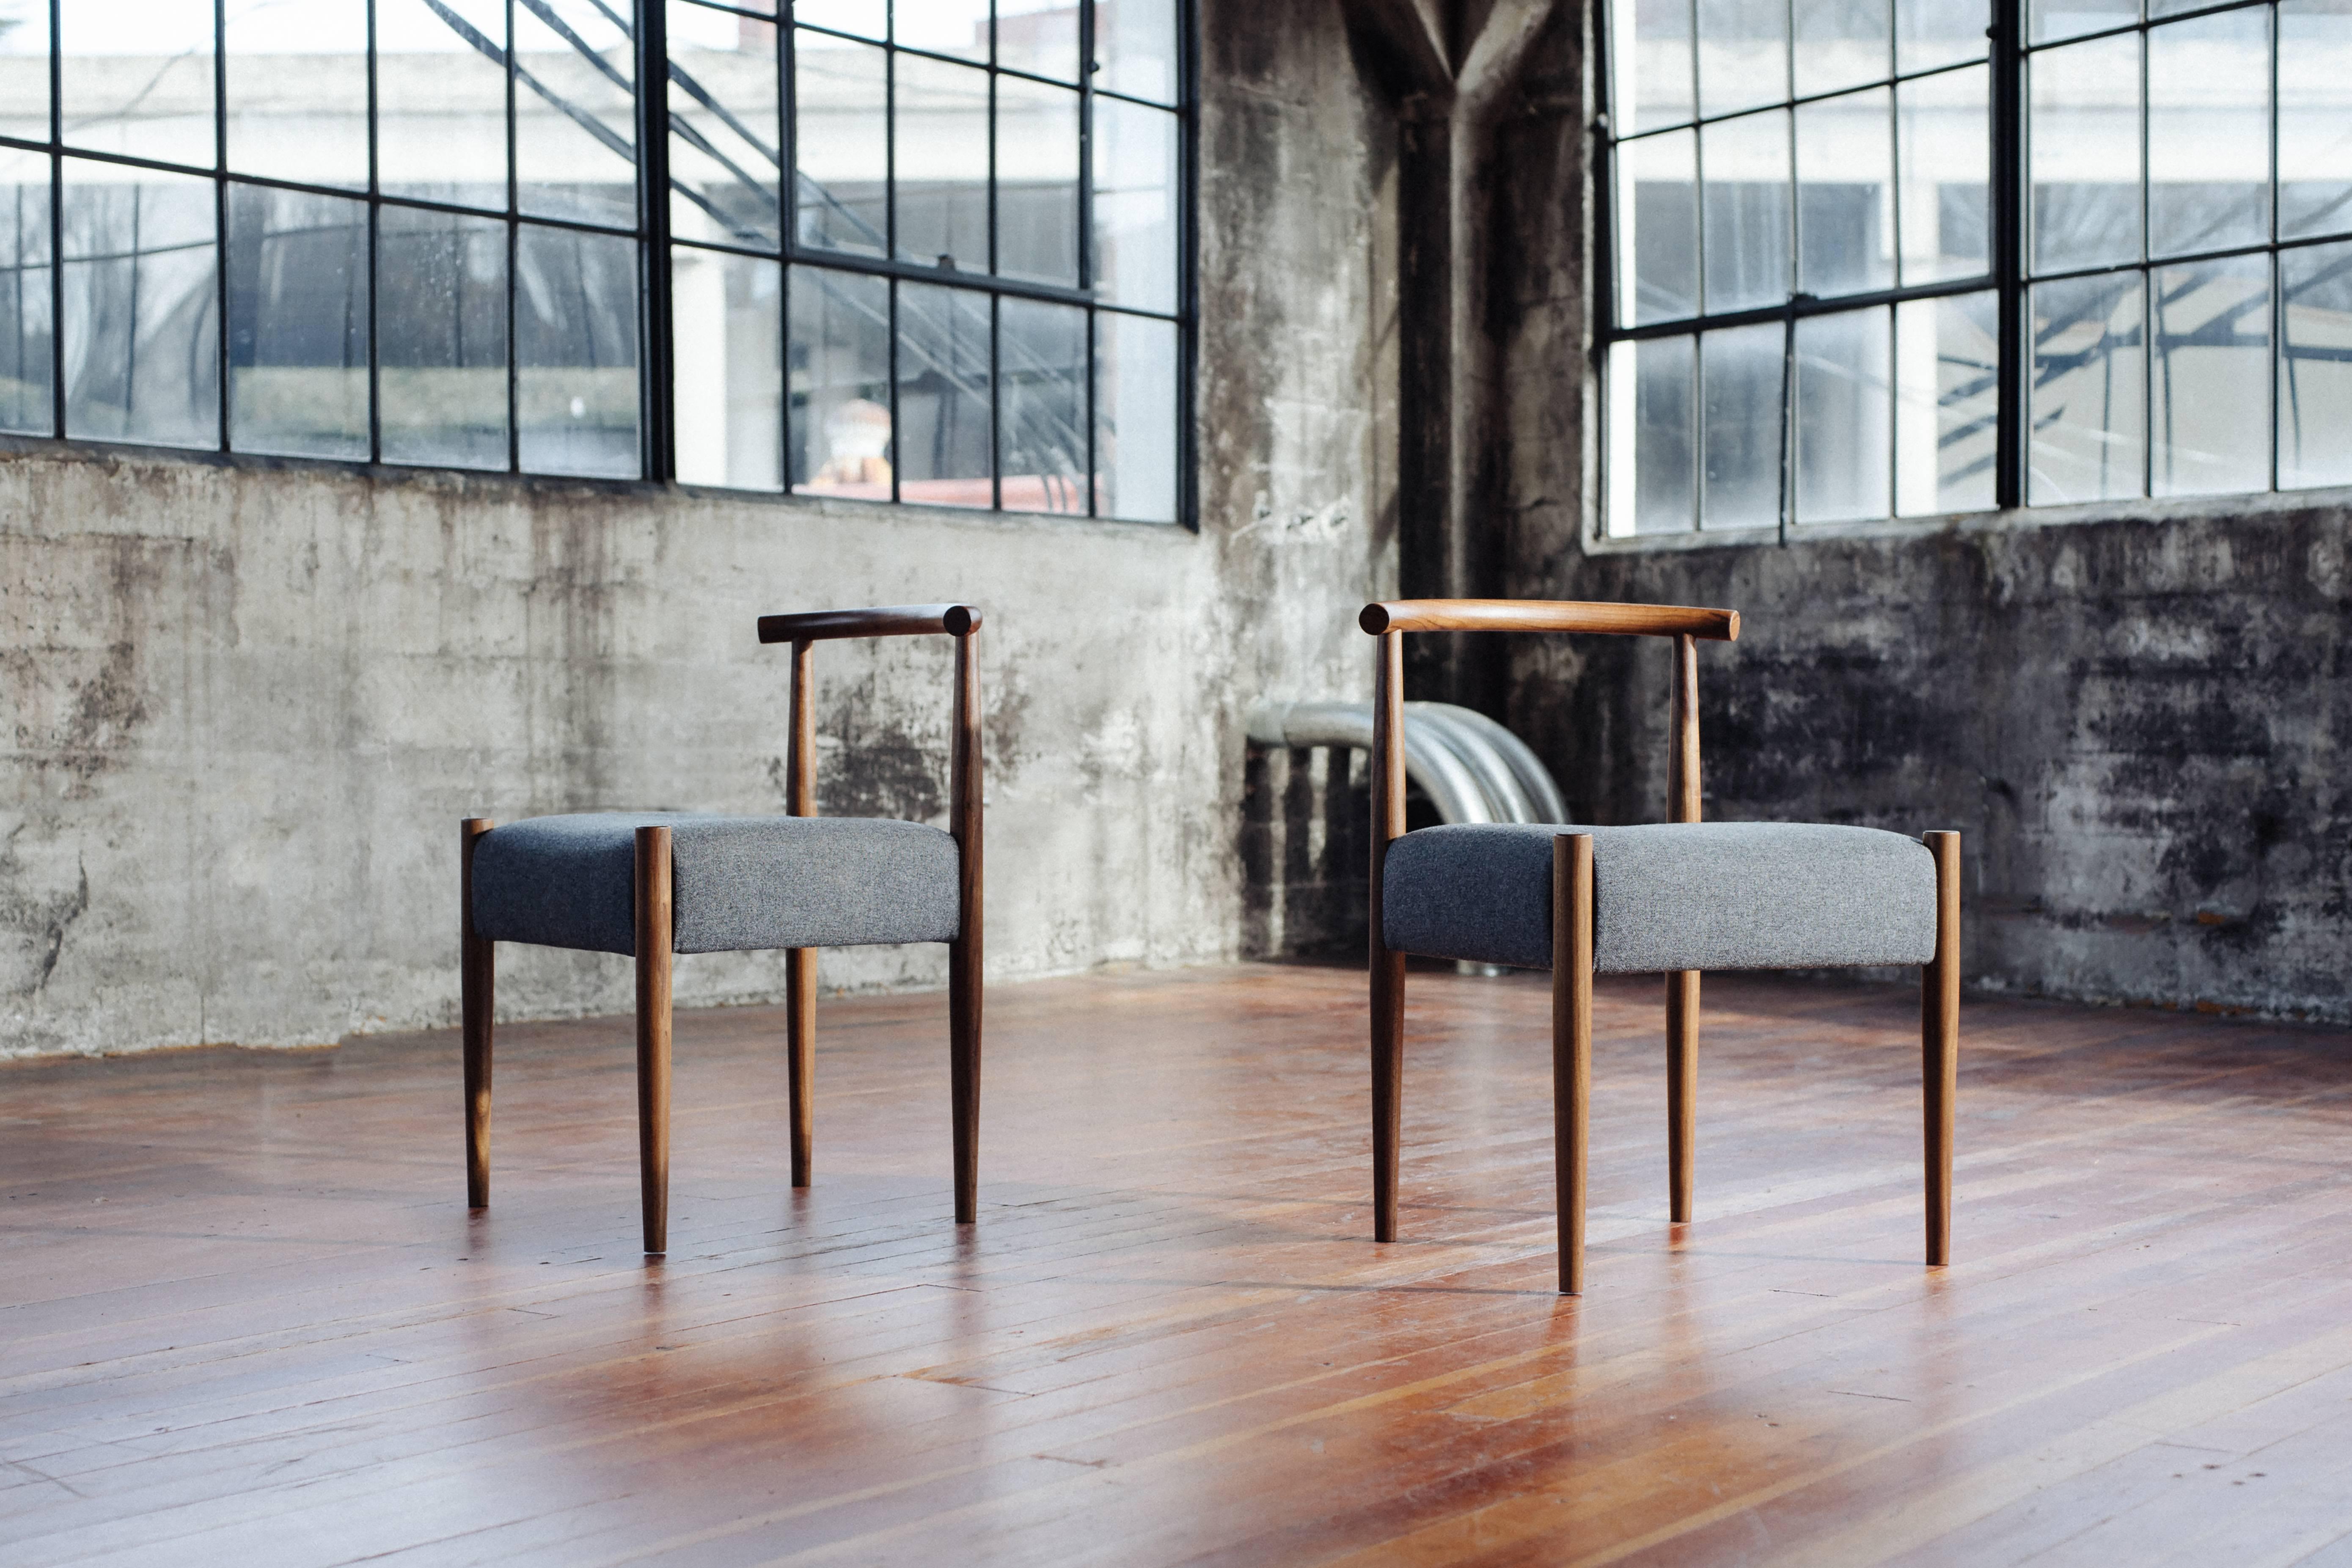 Der Phloem Studio Harbor Stuhl ist ein moderner, zeitgenössischer Beistellstuhl aus Massivholz, der auf Bestellung handgefertigt wird. Er hat gedrechselte, spitz zulaufende und geformte Beine, eine handgeformte Rückenlehne aus Hartholz und einen